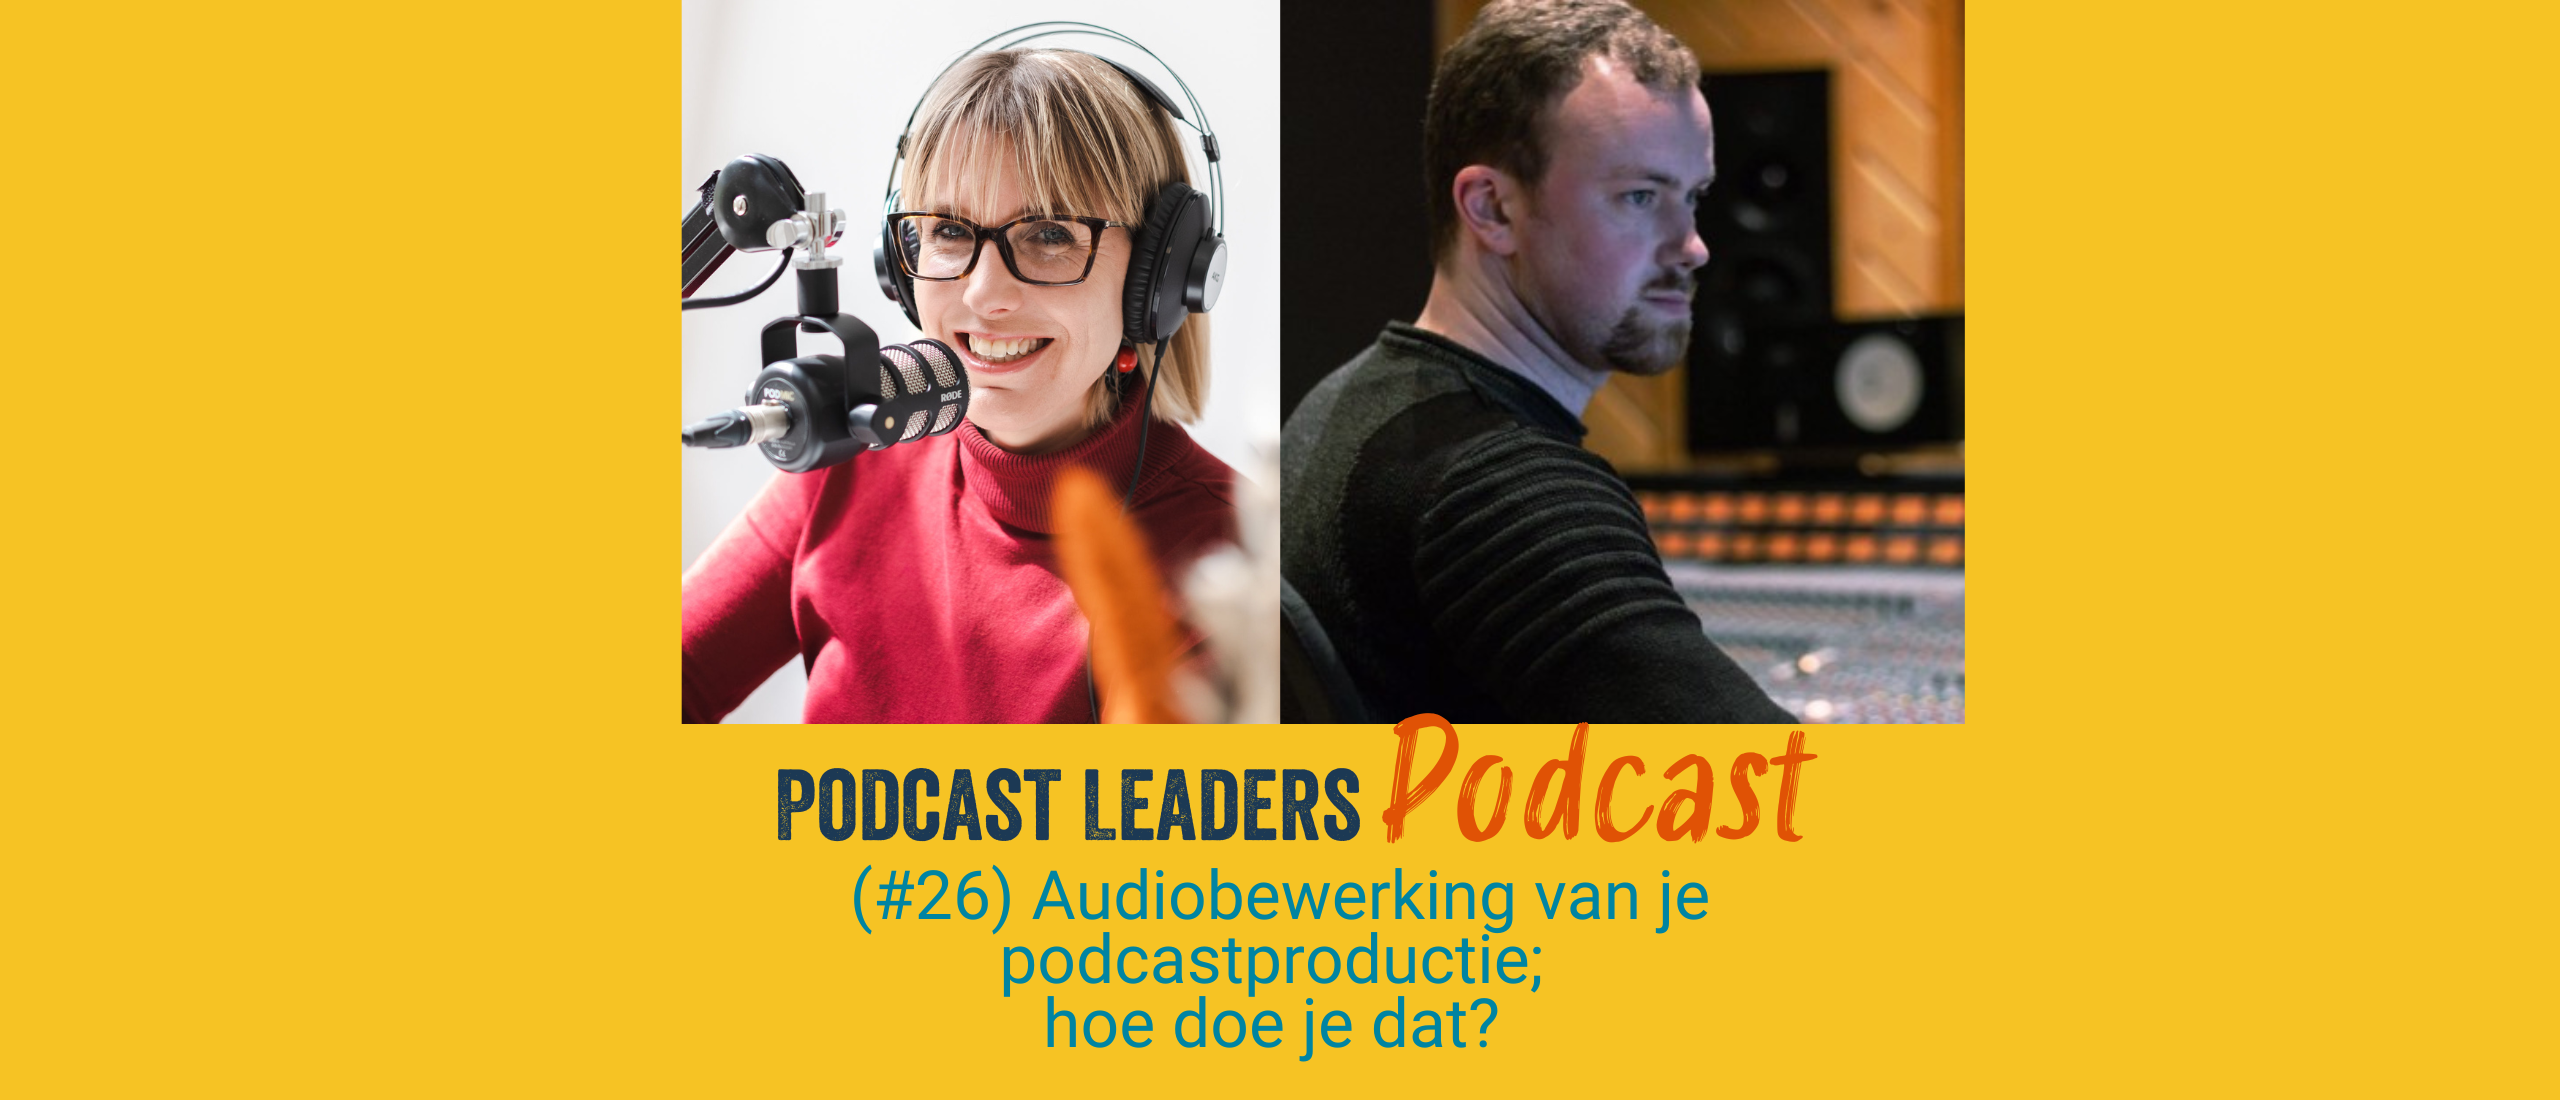 Audiobewerking van je podcast; hoe doe je dat? met Frank de Jong